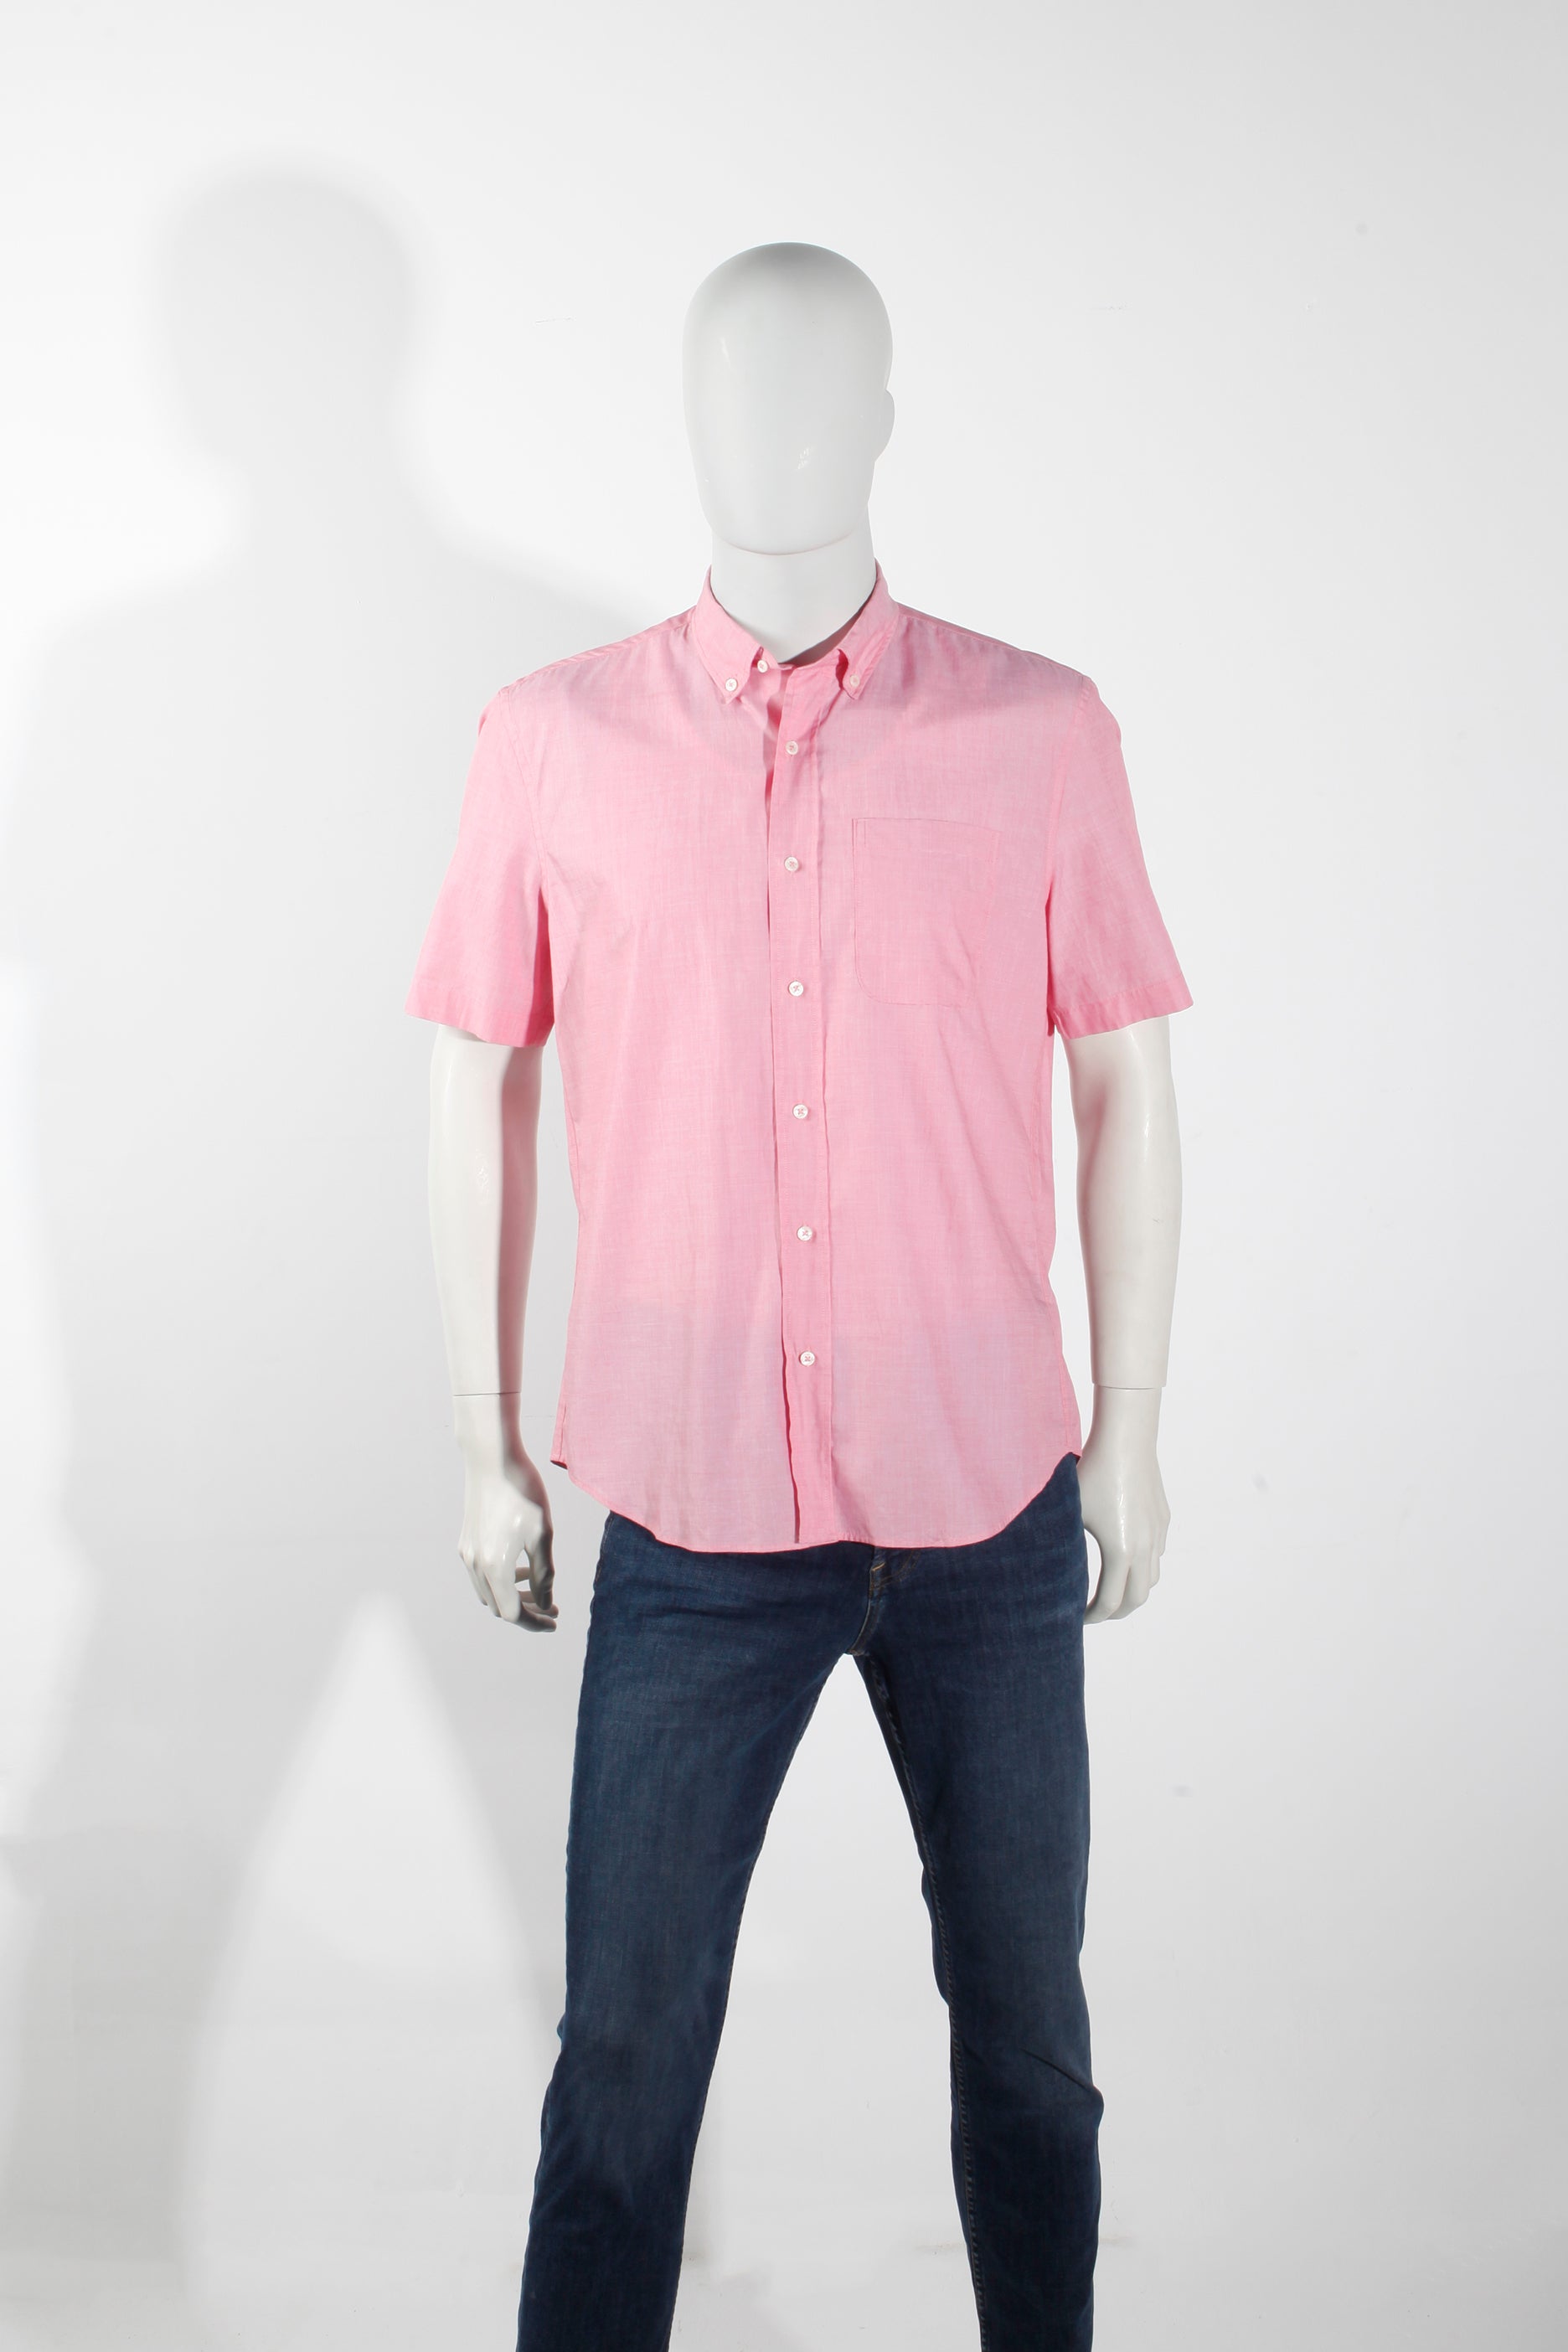 Men's Pink Short-Sleeved Shirt (Medium)